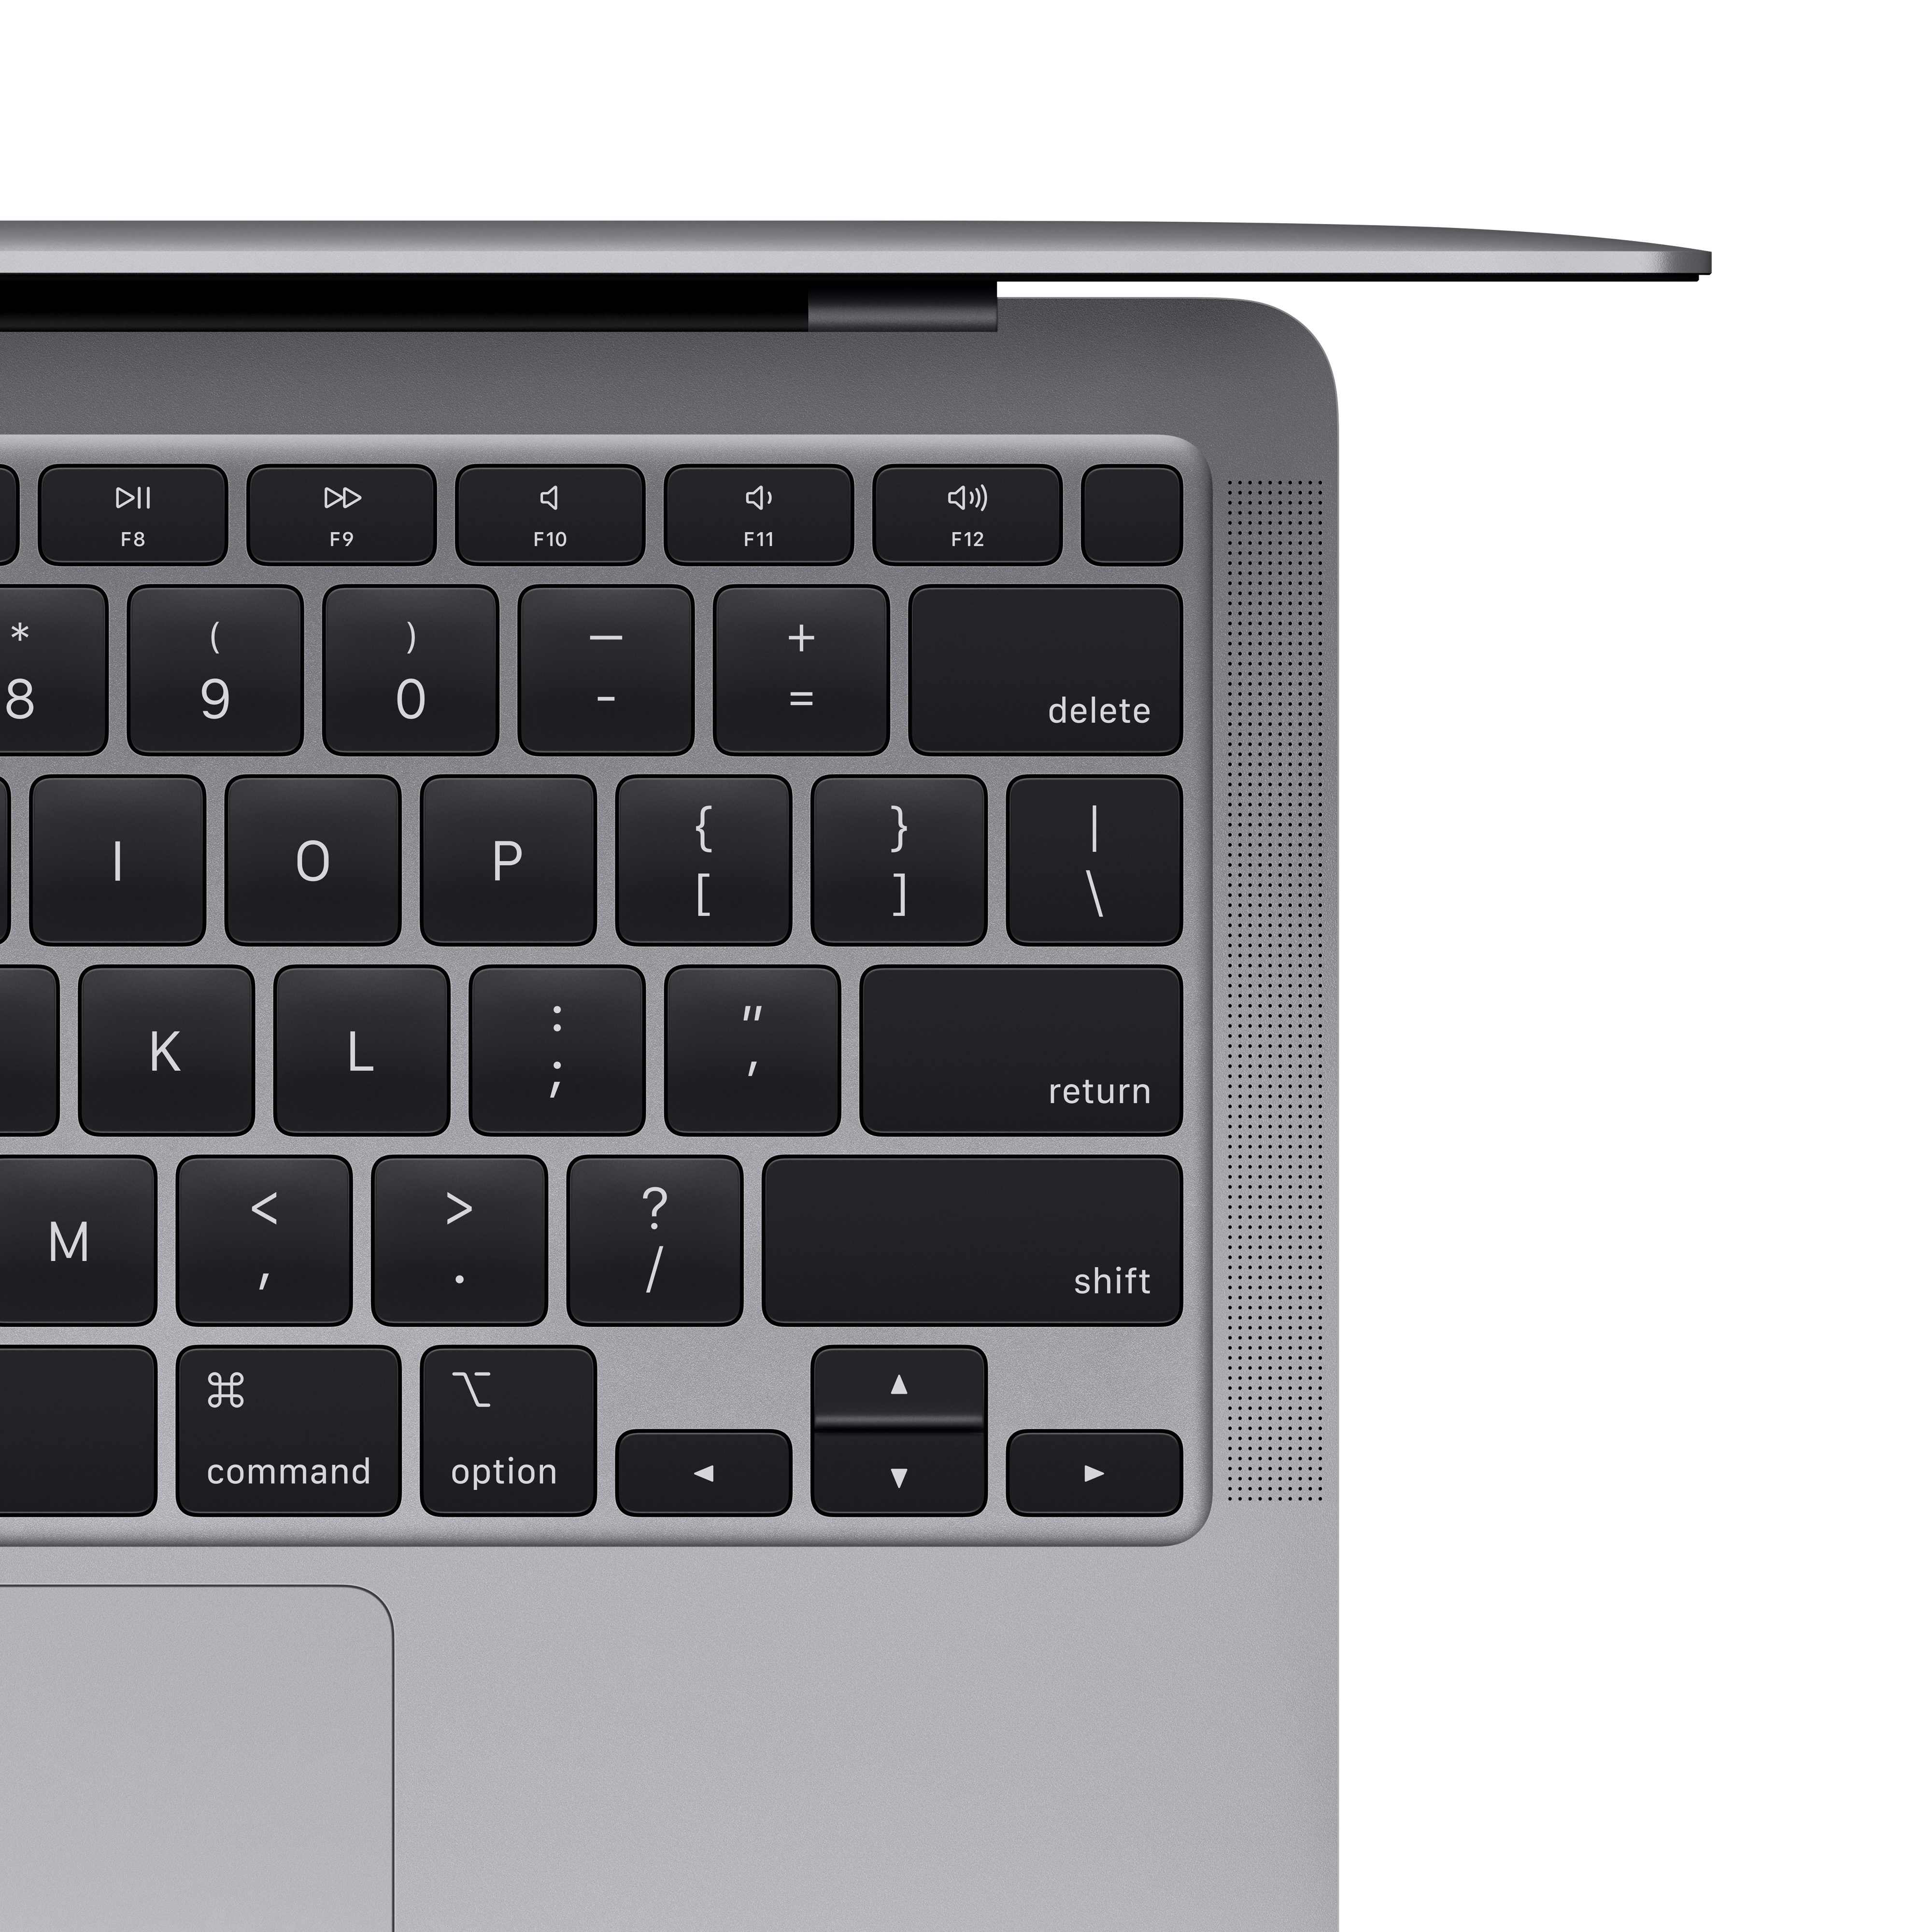 Apple MacBook Air - M1 - M1 7-core GPU - 16 GB RAM - 2 TB SSD - 33.8 cm (13.3")